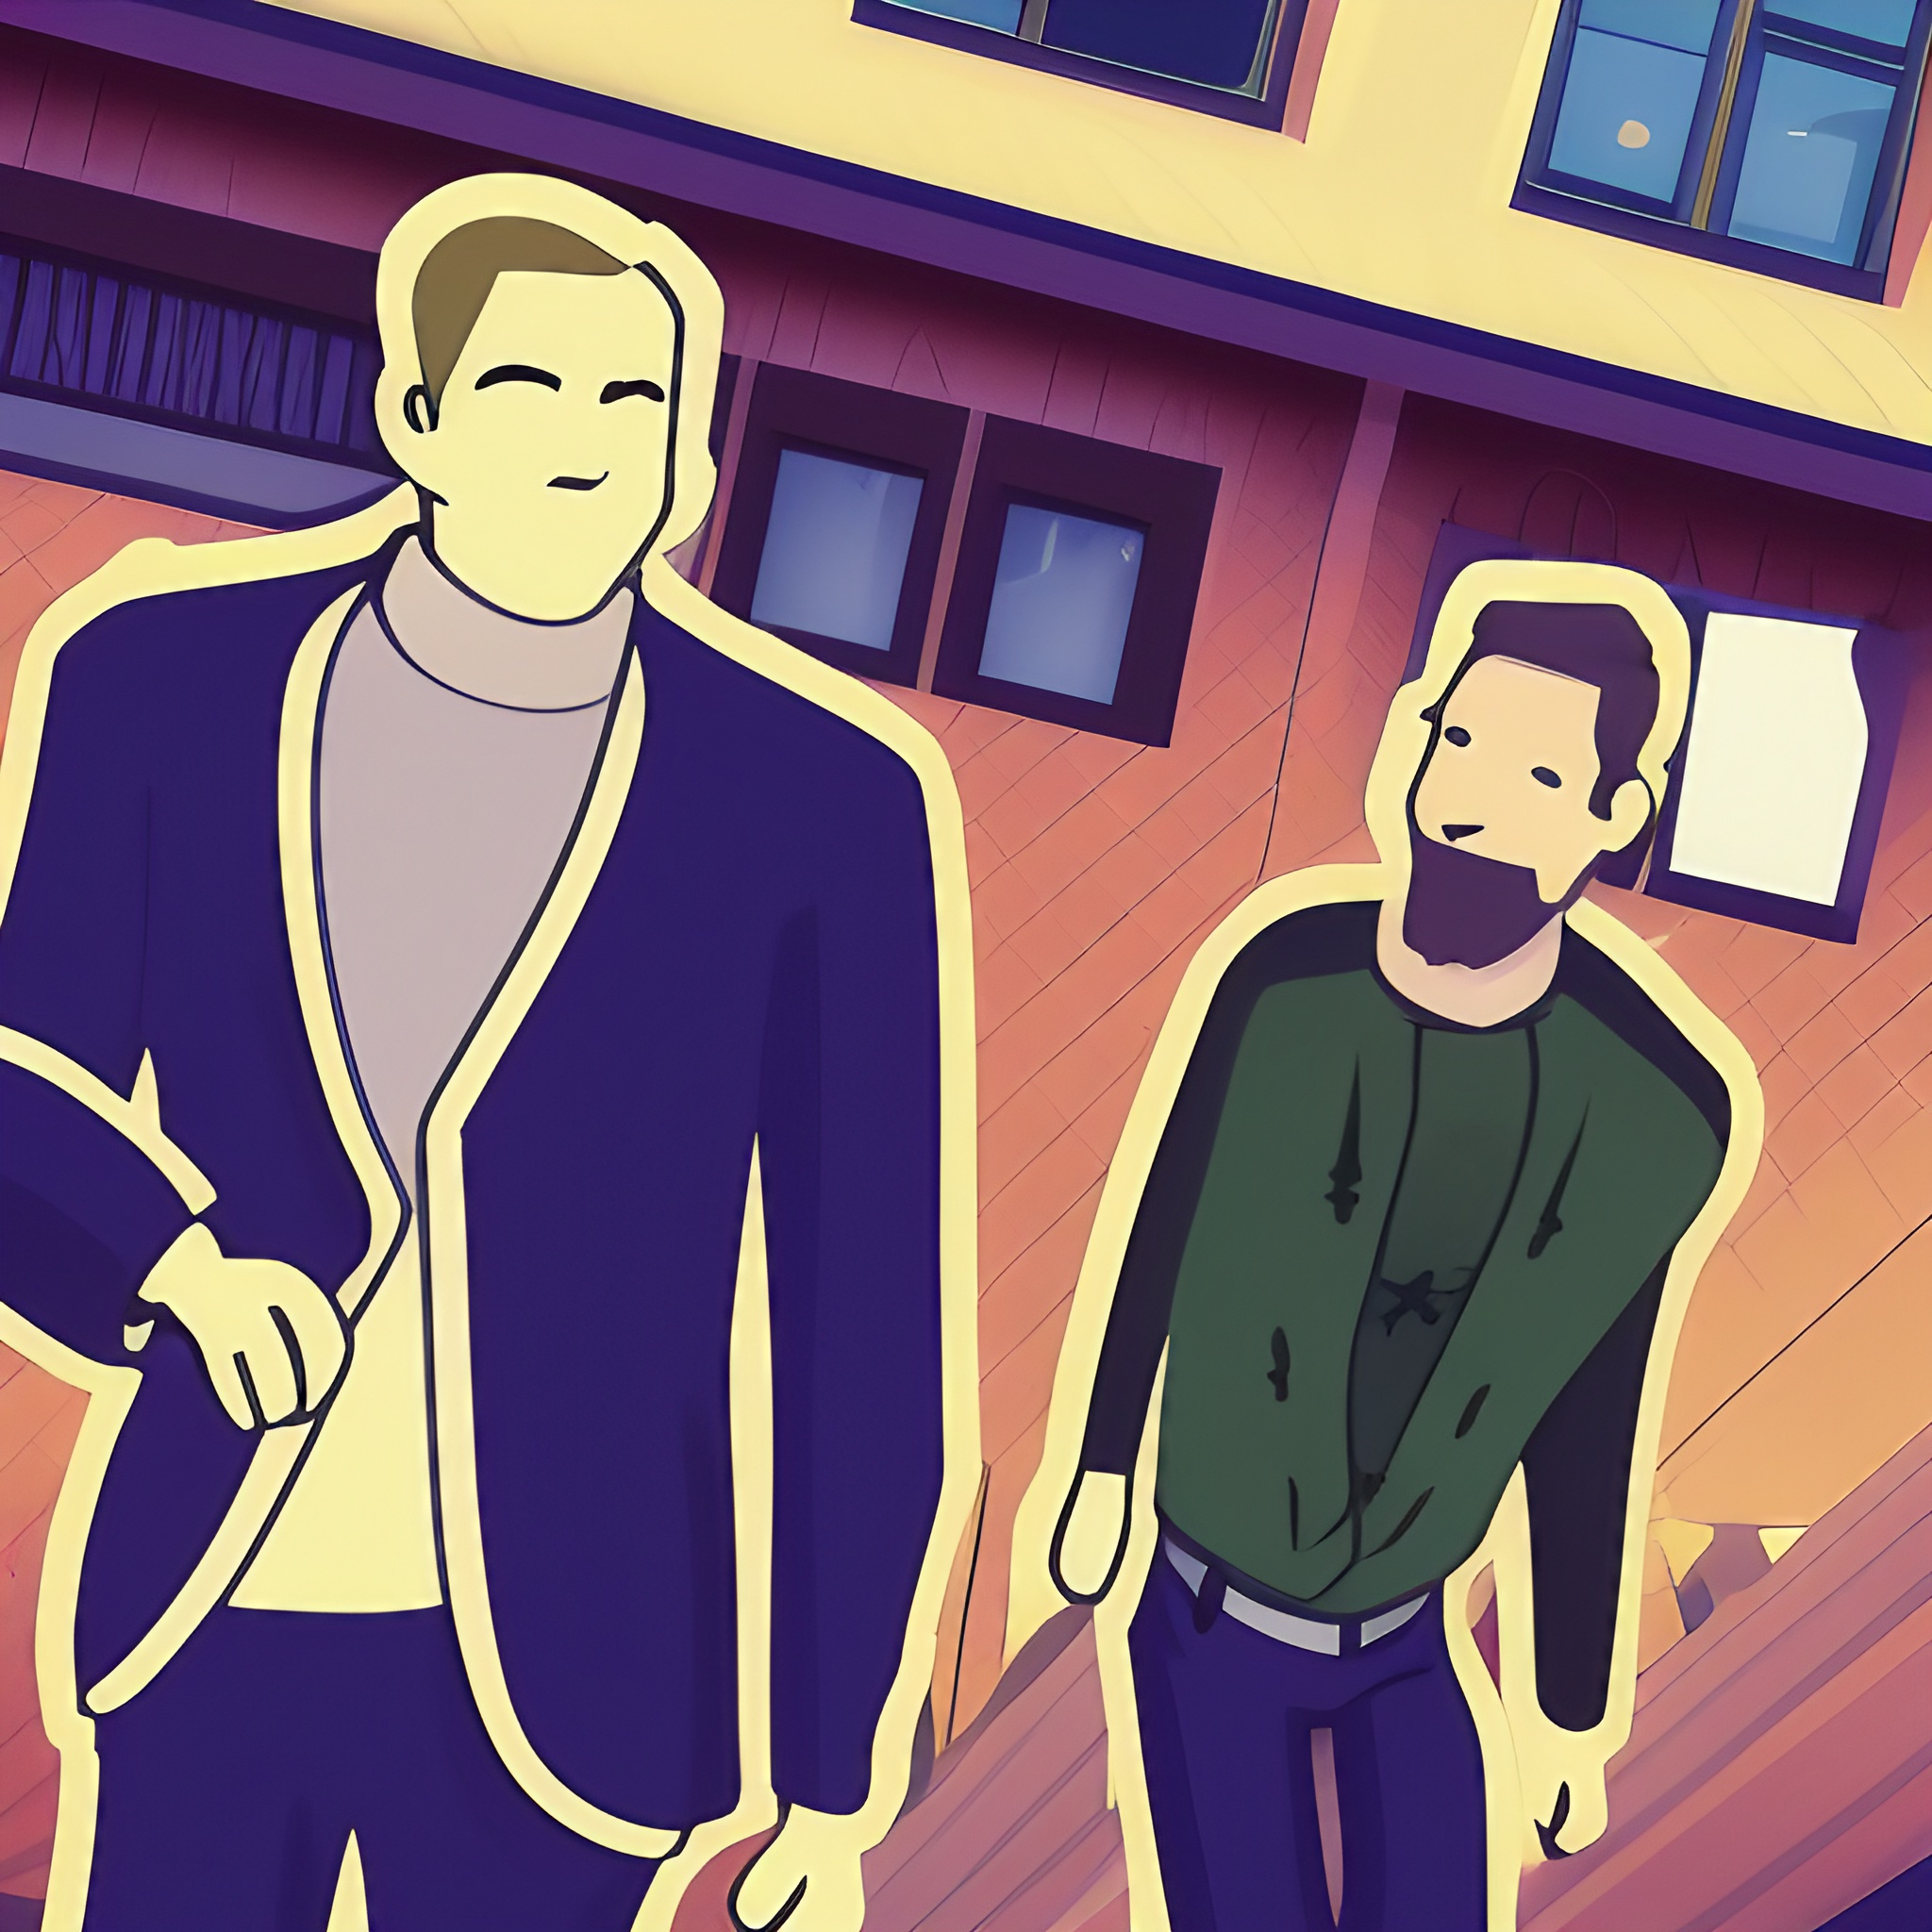 grafika w stylu kreskówki na grafice widać dwóch męzczyzn rozmawiających na mieście